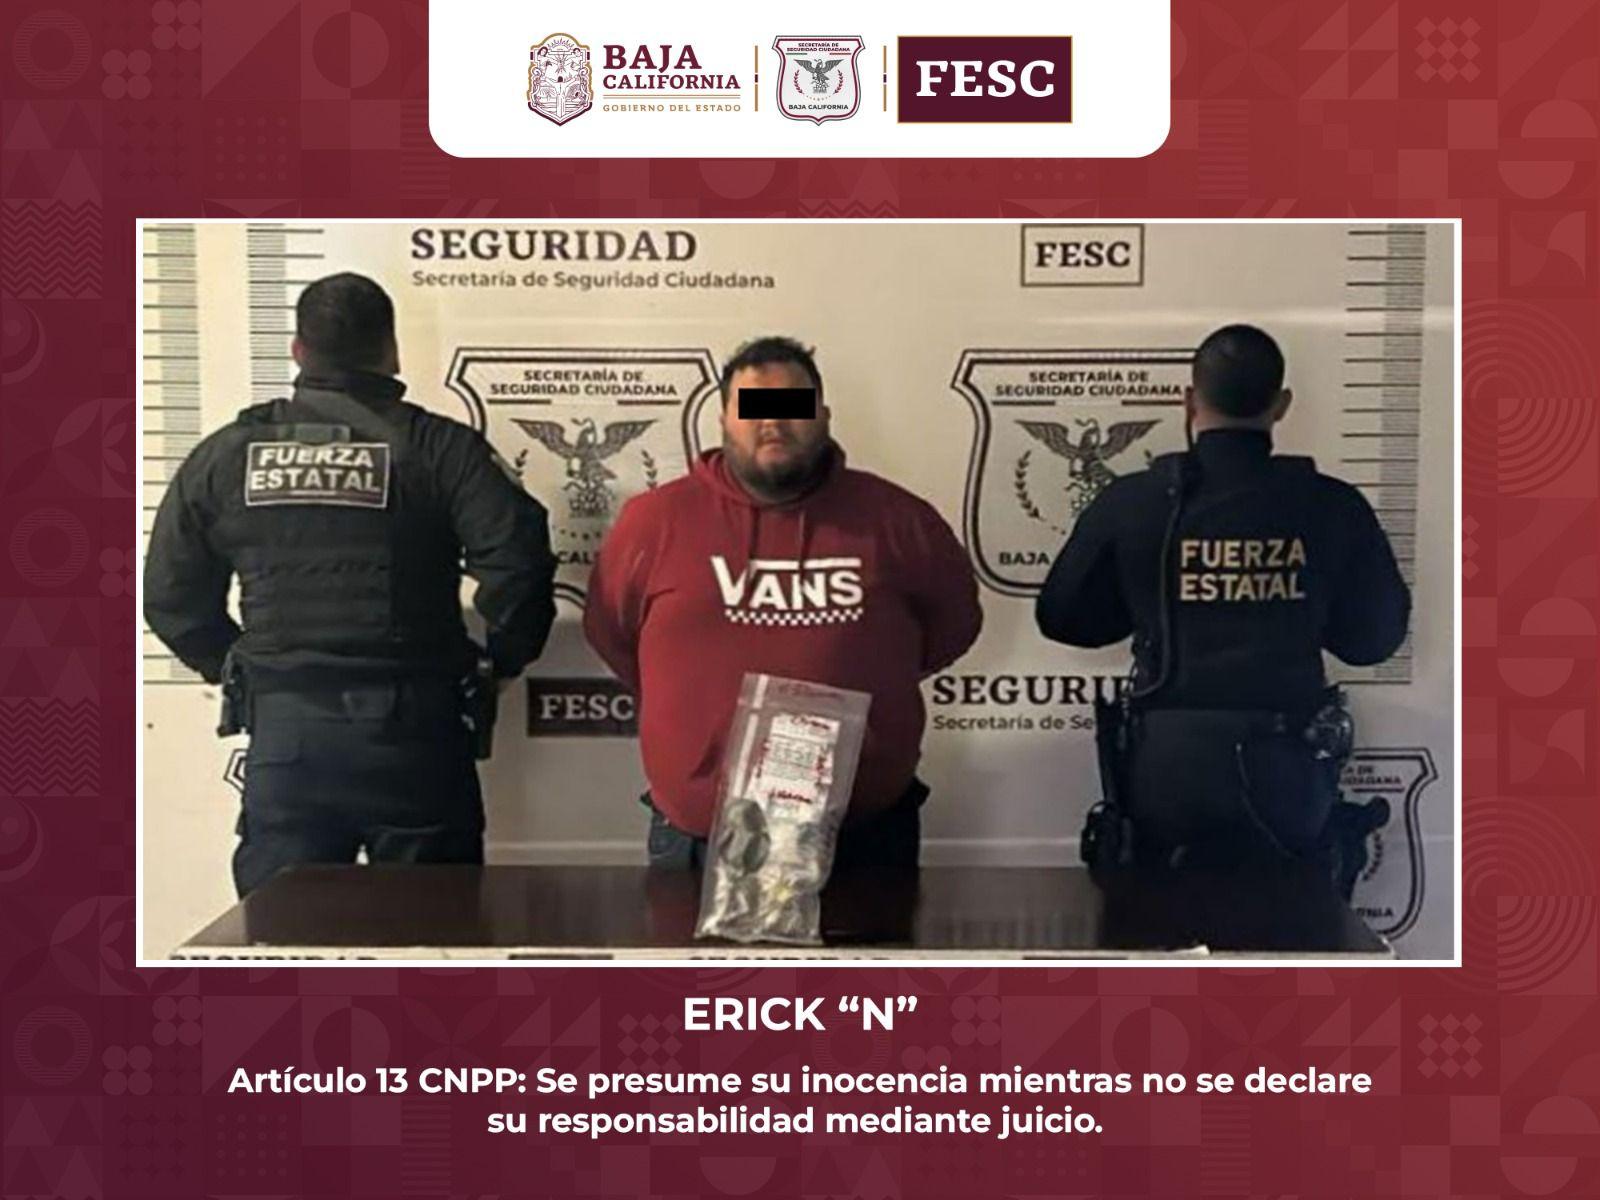 Asegura FESC “Poncha llantas”, detiene a hombre con droga y recupera vehículo robado durante operativo en Tecate